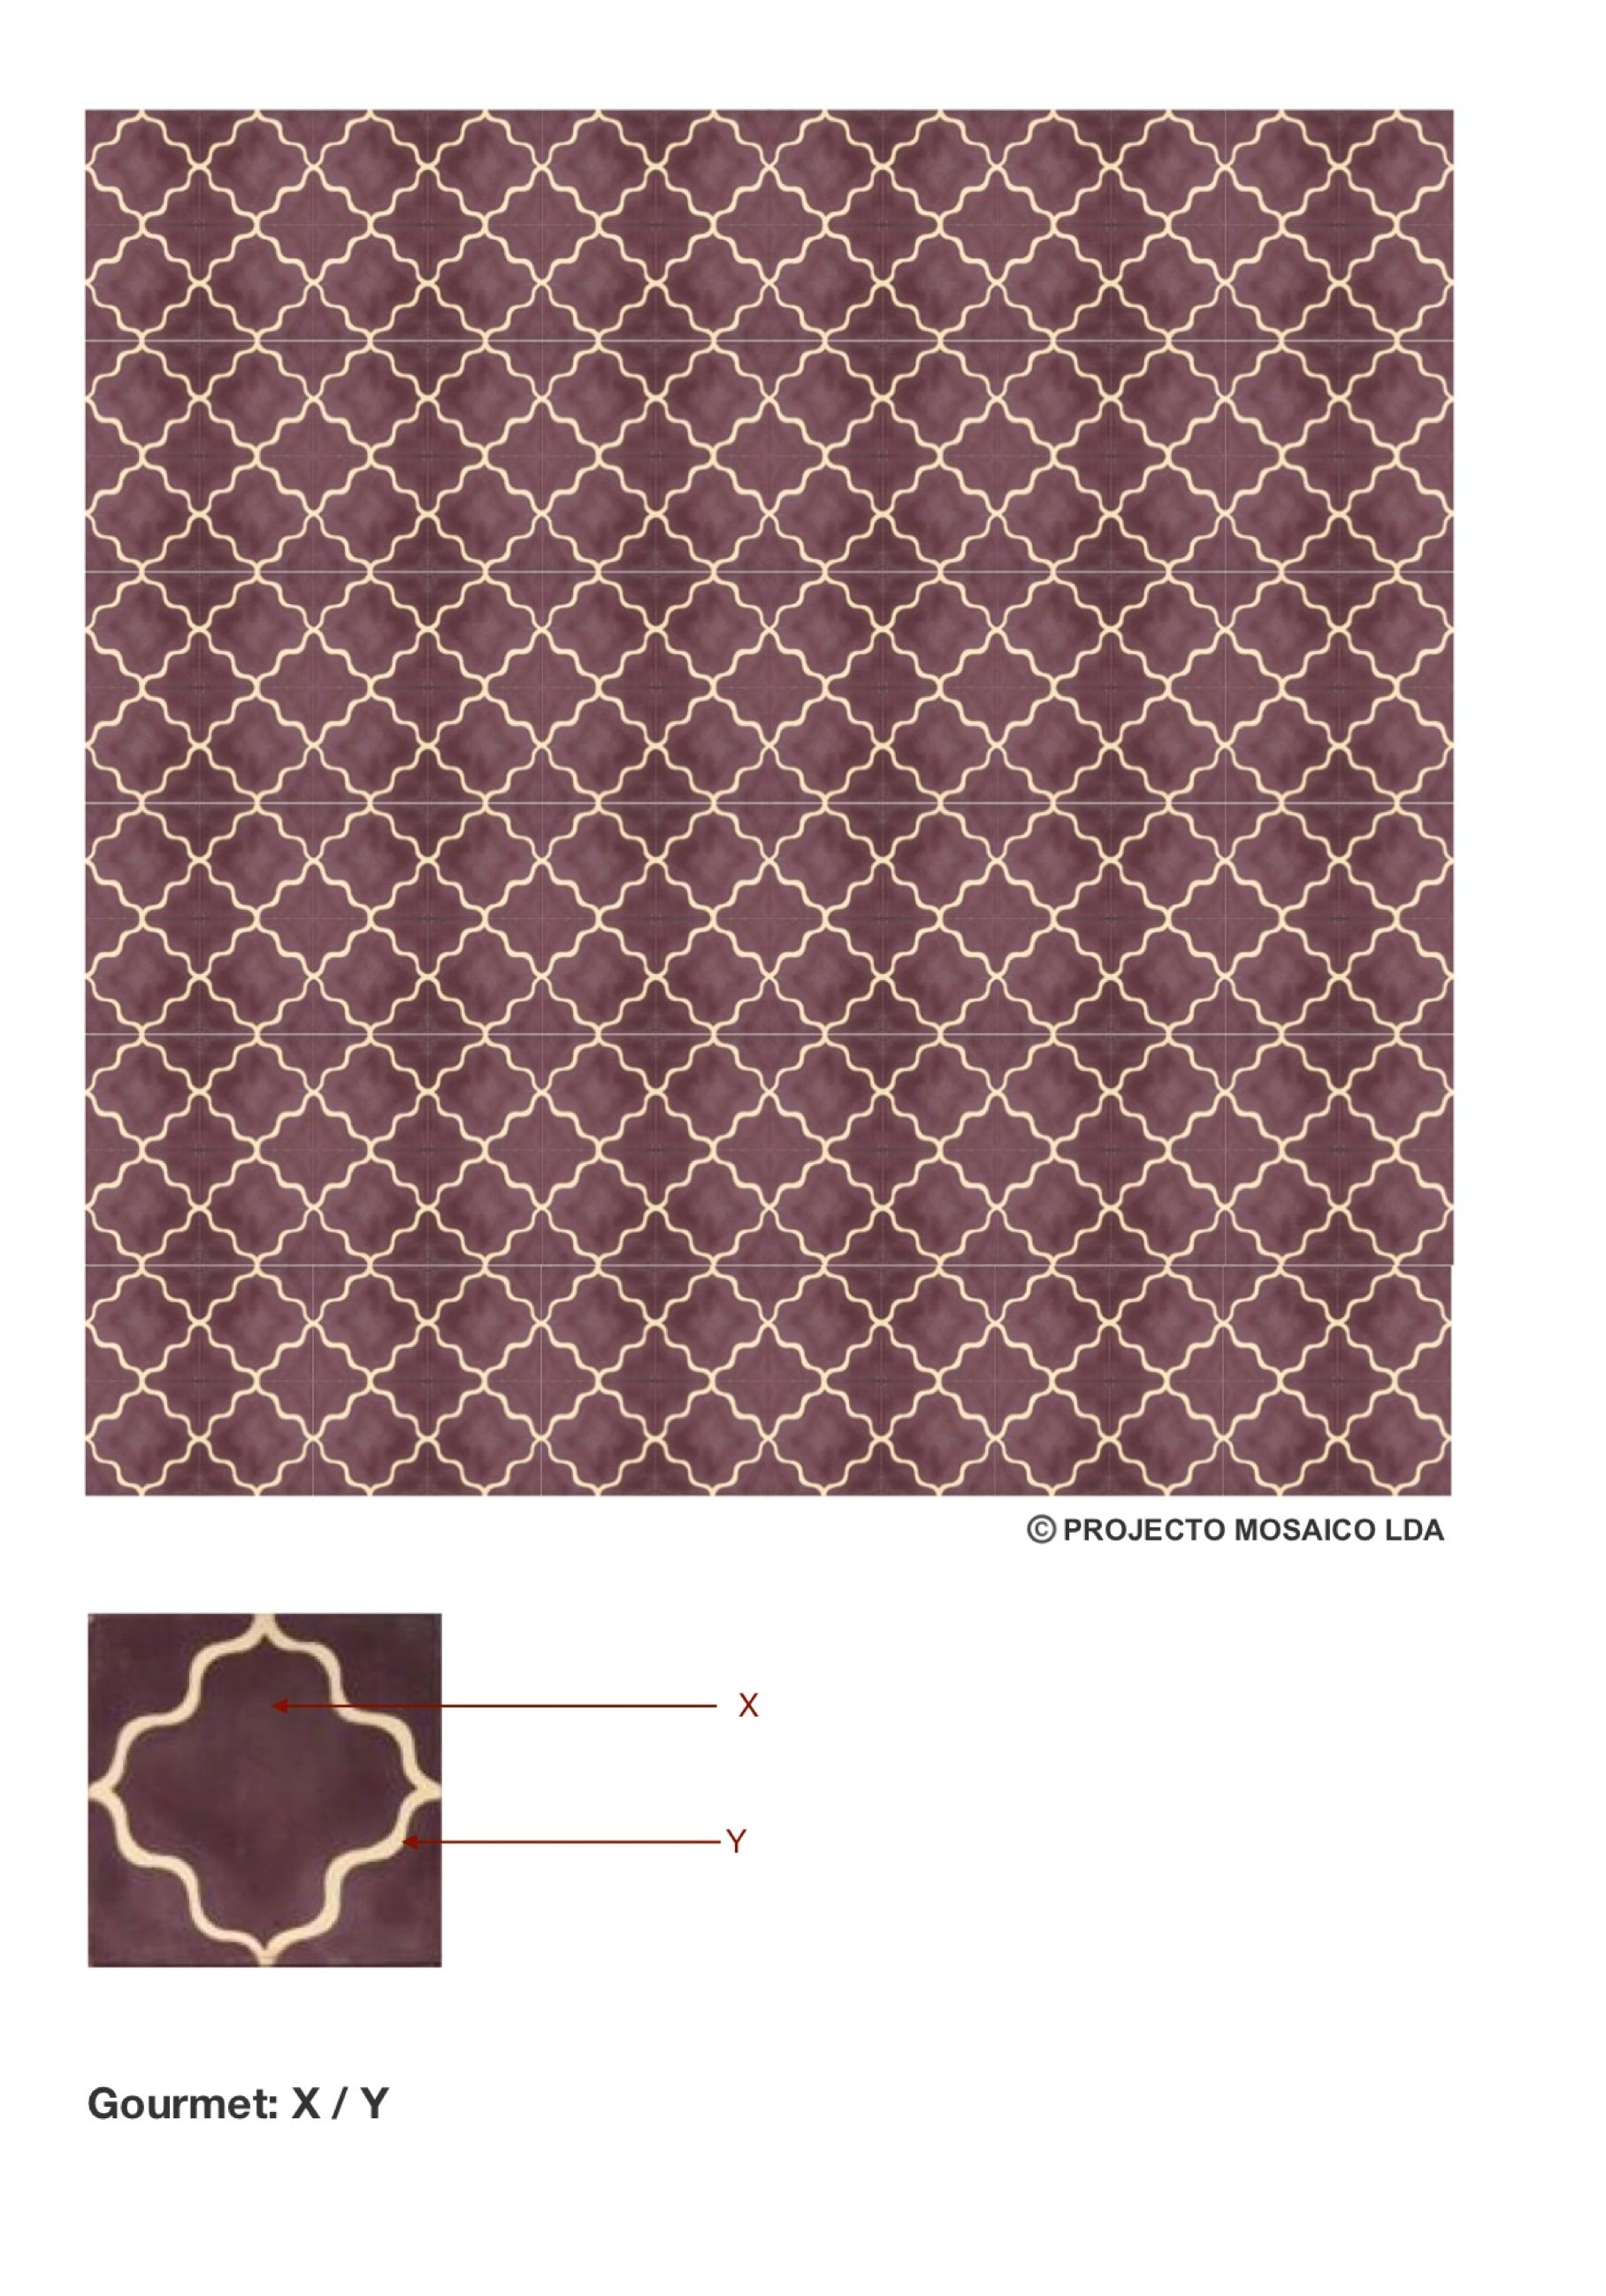 illustração de aplicação do mosaico hidráulico ref: Gourmet